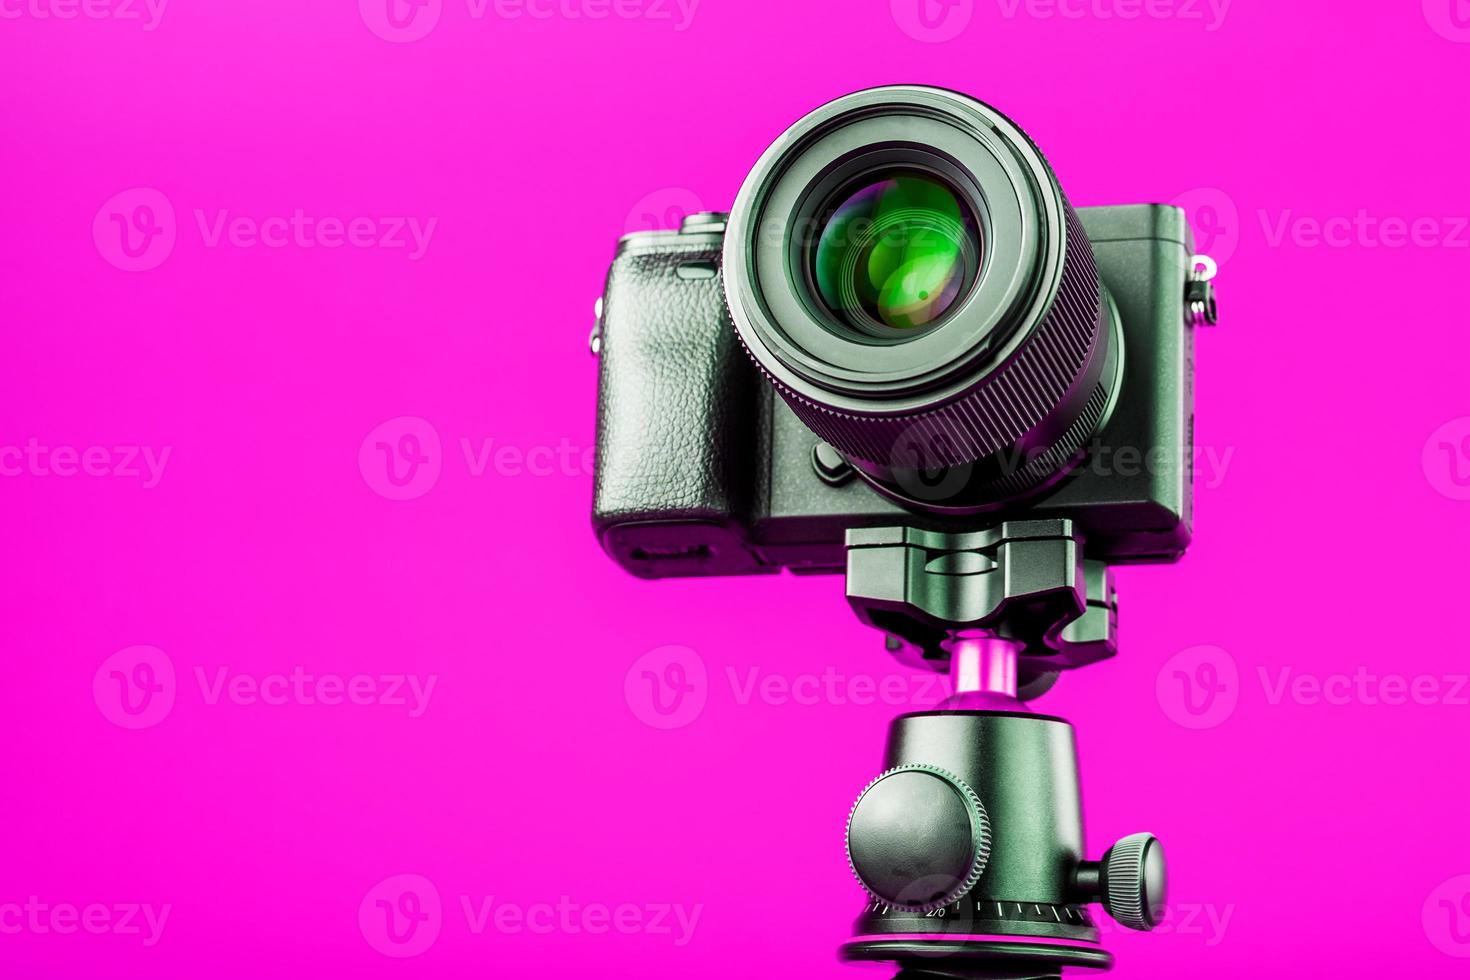 professionelle kamera auf einem stativ, auf einem rosa hintergrund. Nehmen Sie Videos und Fotos für Ihren Blog oder Bericht auf.